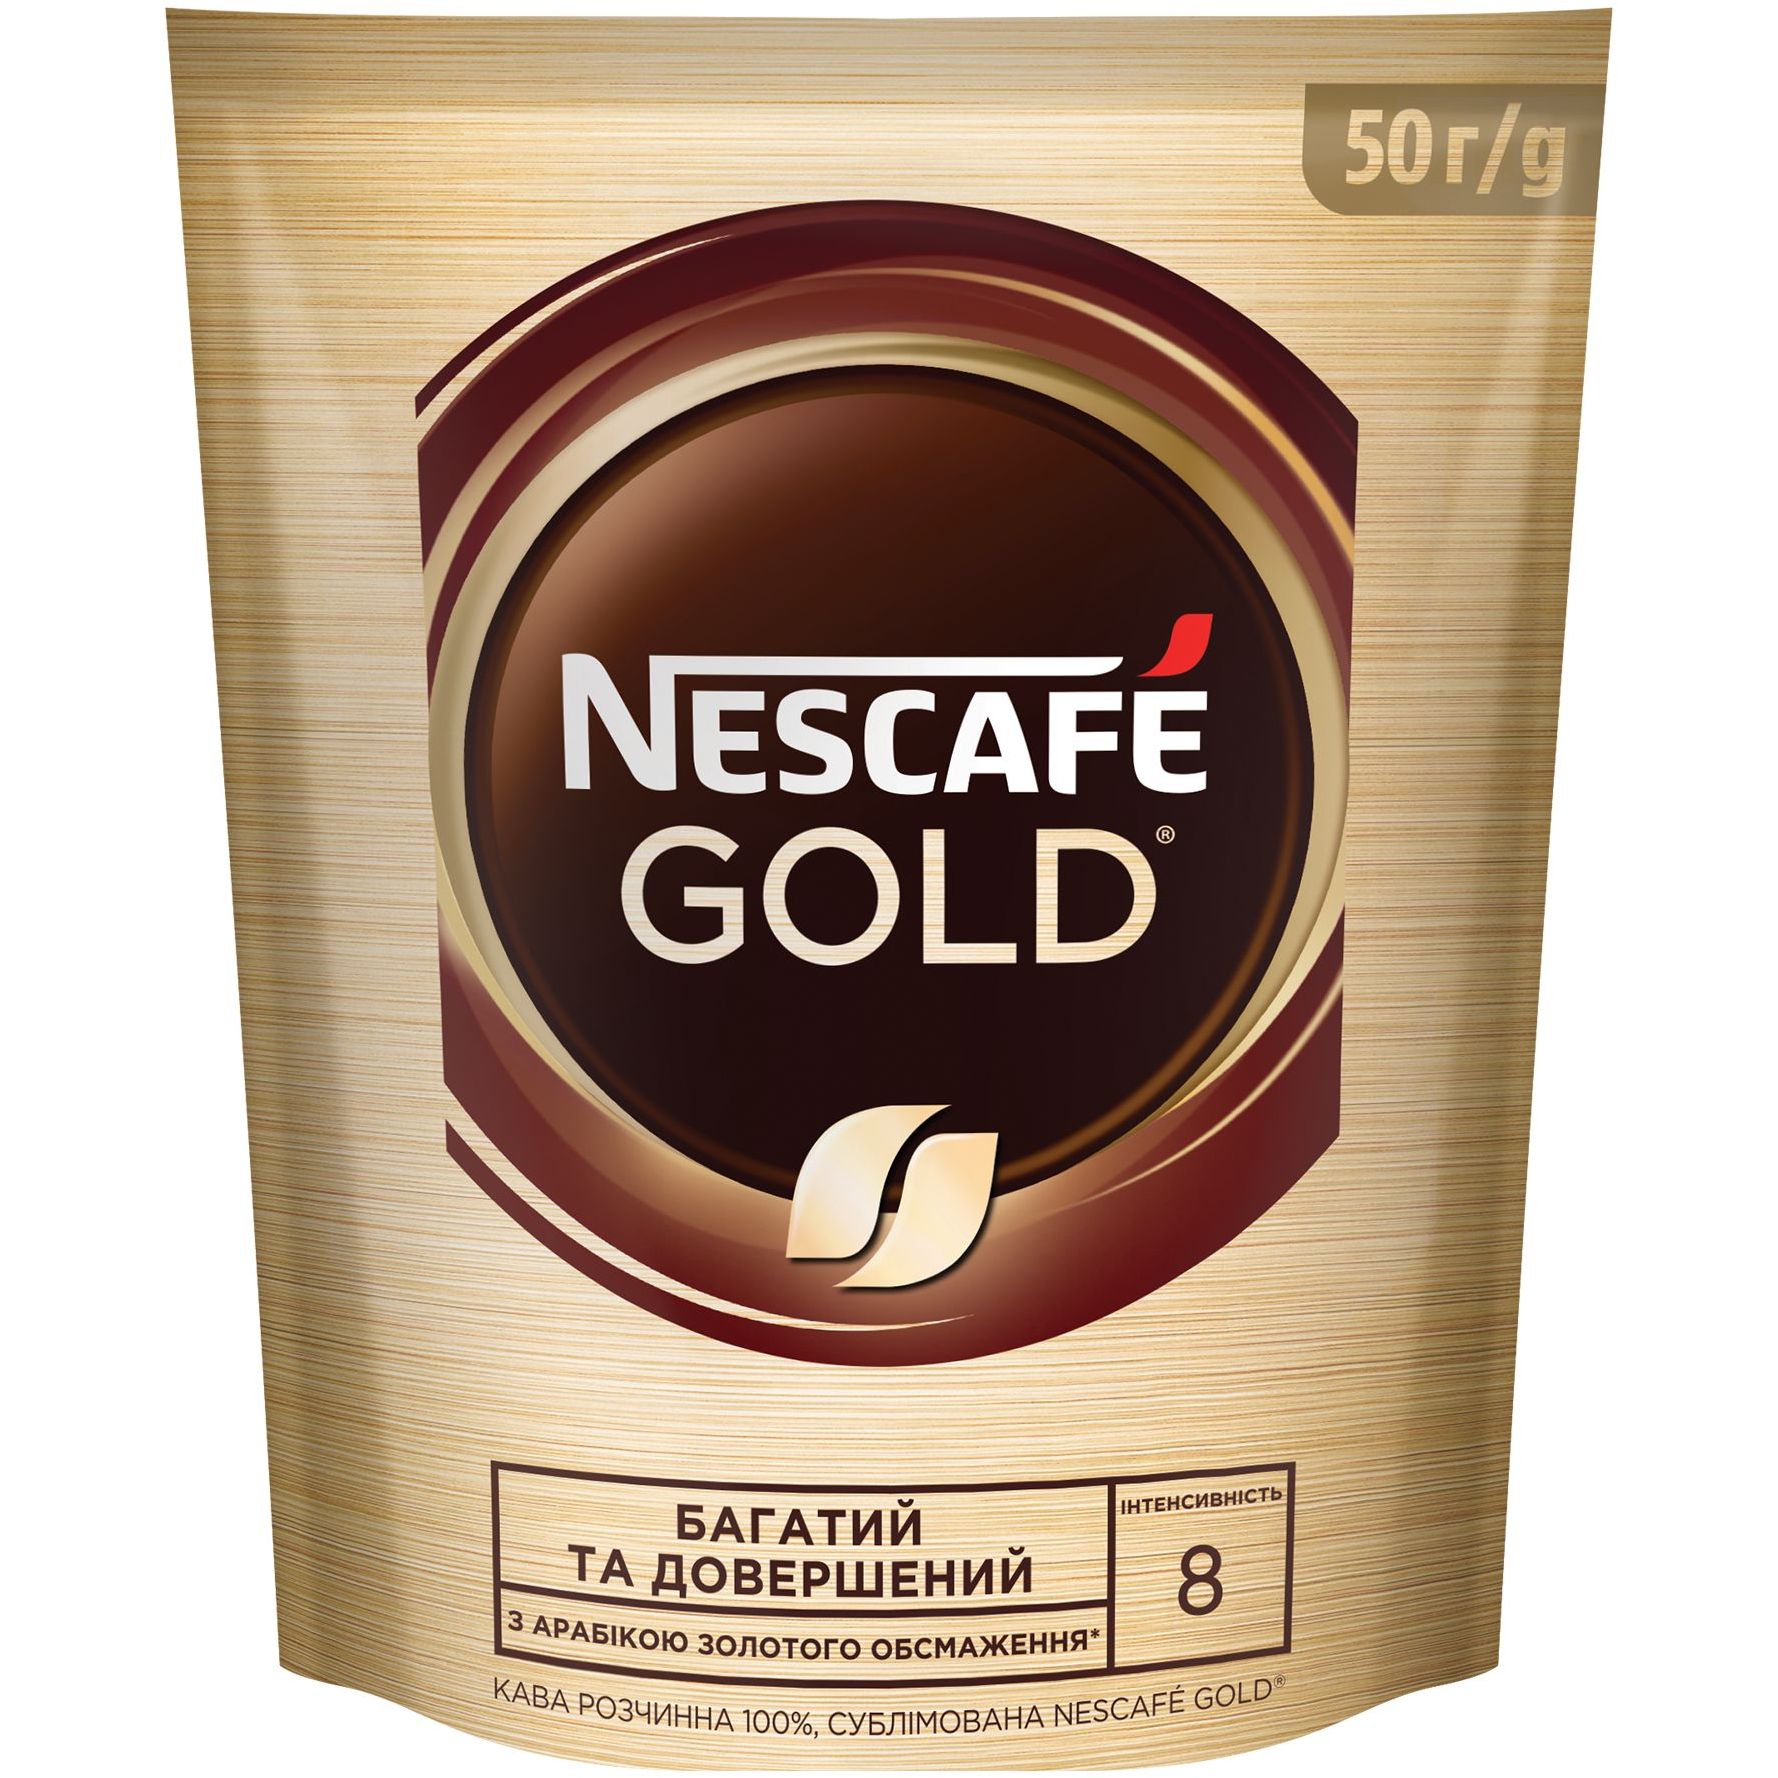 Кава розчинна Nescafe Gold, 50 г - фото 1